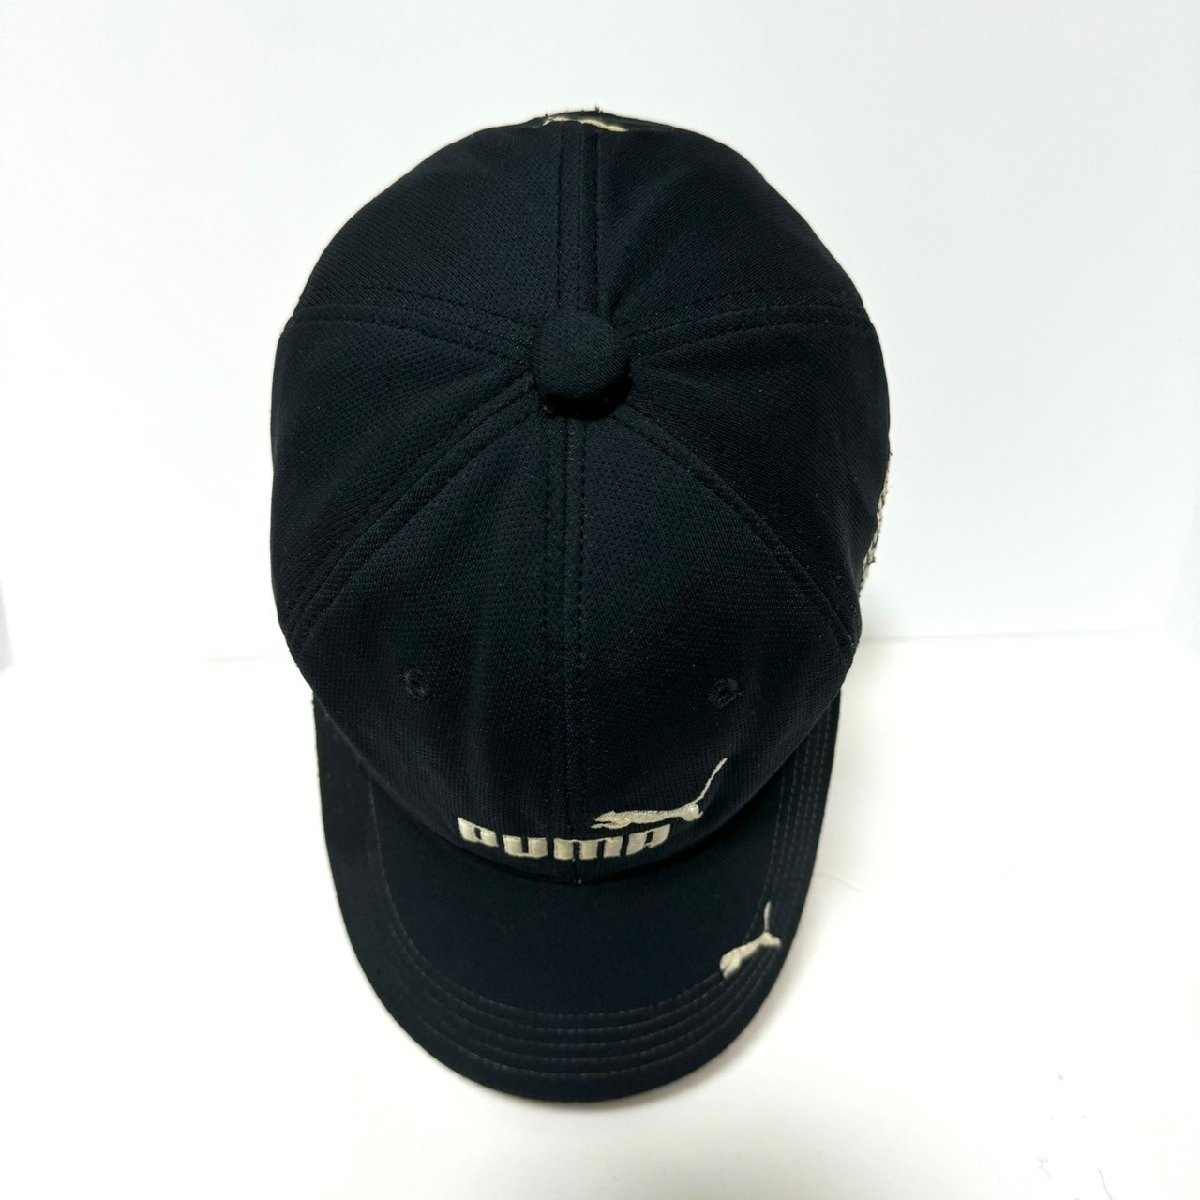 (^w^)b PUMA プーマ キャップ 帽子 6パネル ロゴ 刺繍 ベルクロベルト ゴルフ ランニング シンプル スポーティー 万能 ブラック C0710EE_画像6